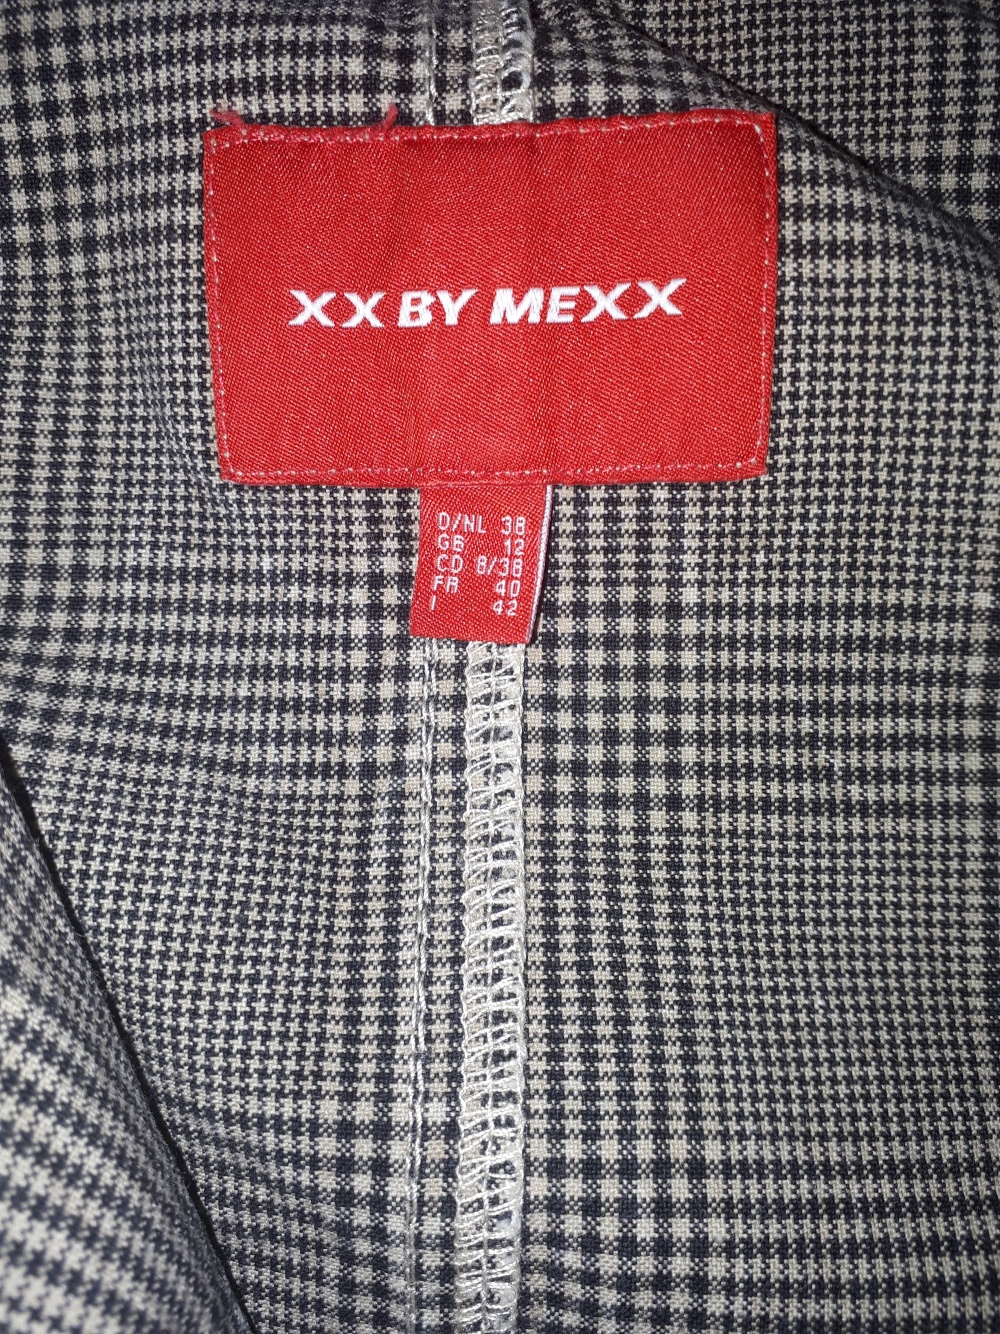 Пиджак XX by Mexx 38 евро -р-р